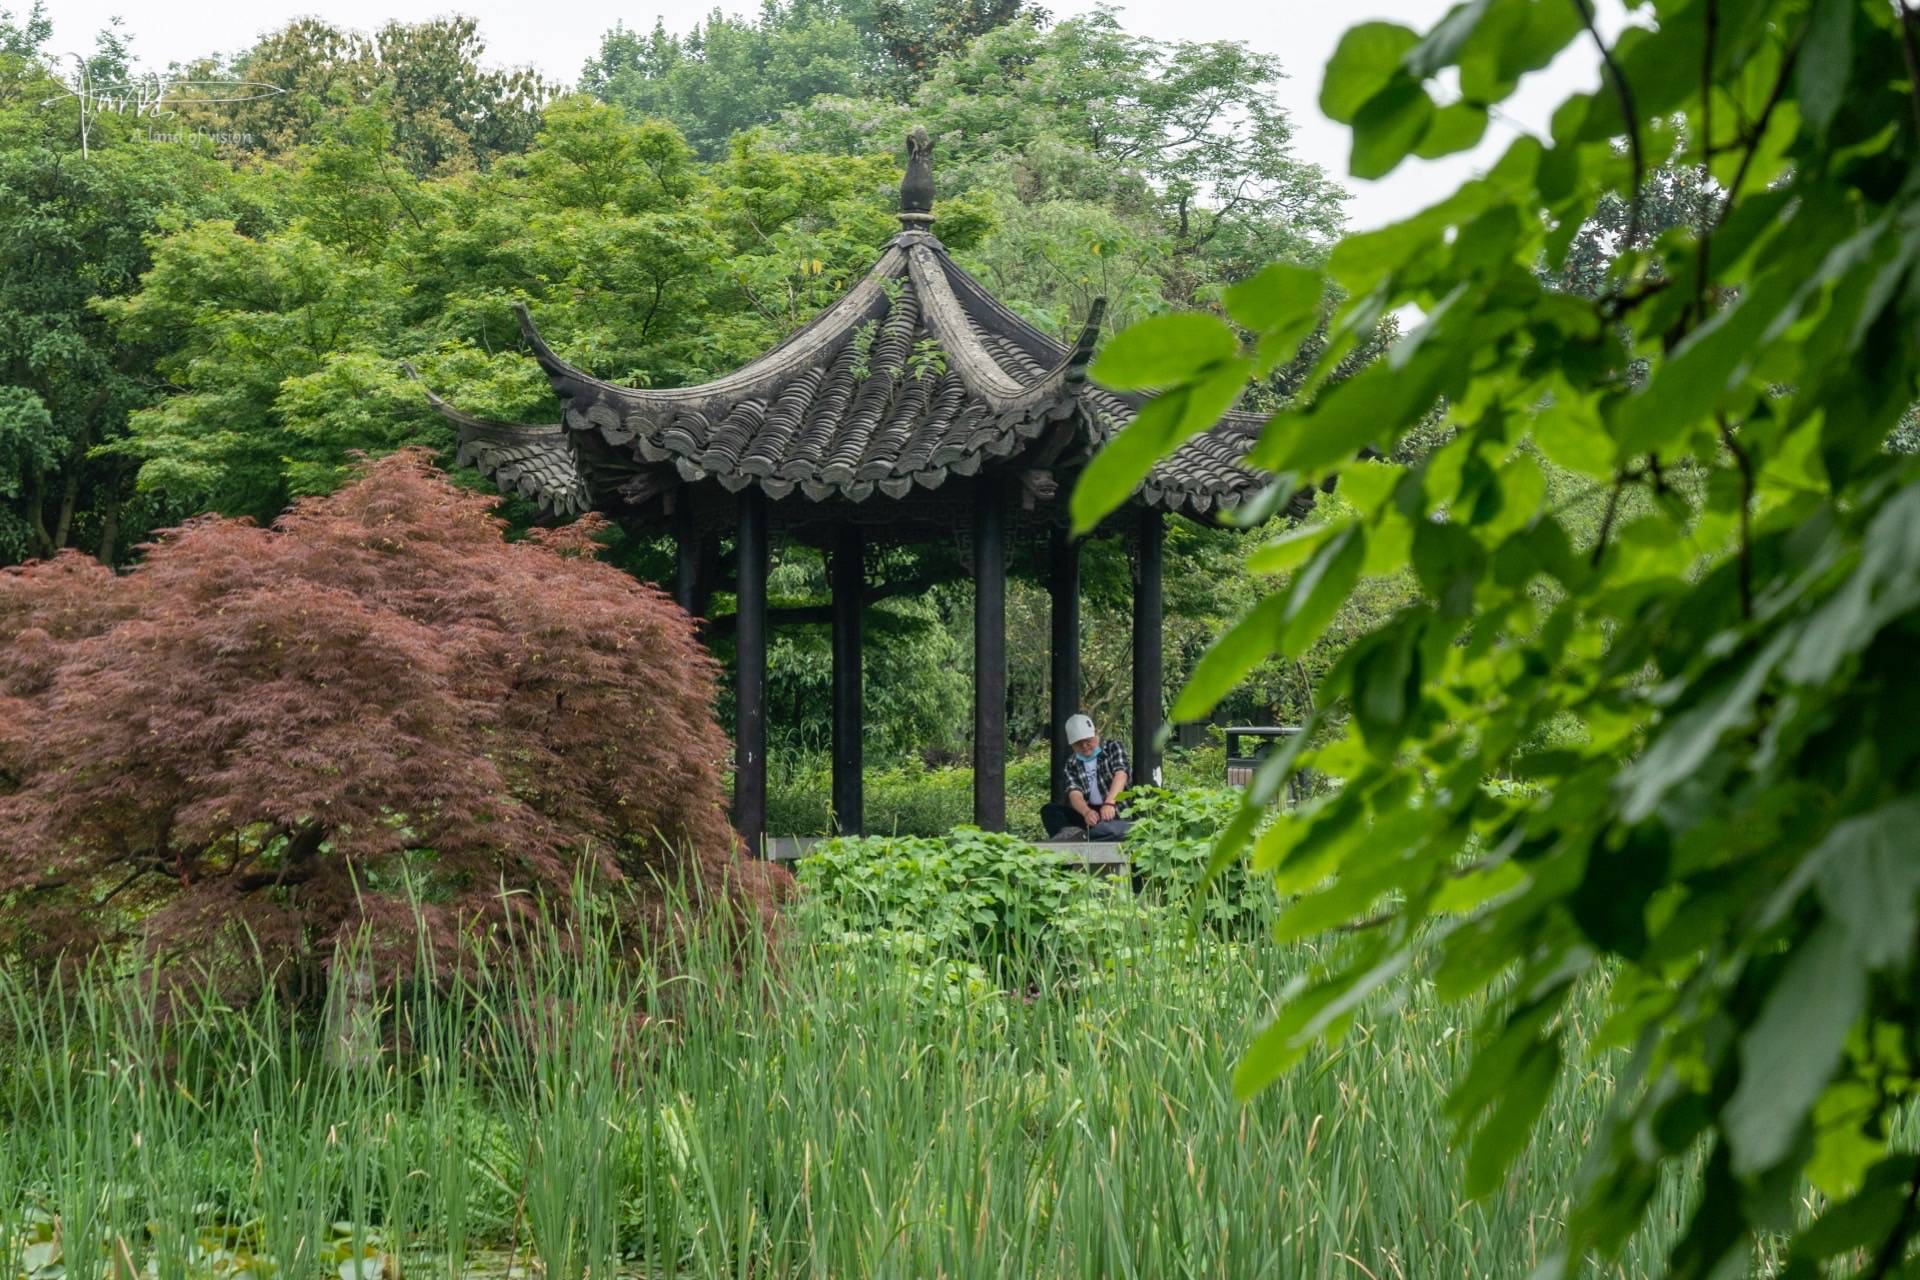 雨后的杭州花圃,郁郁葱葱,静谧安详